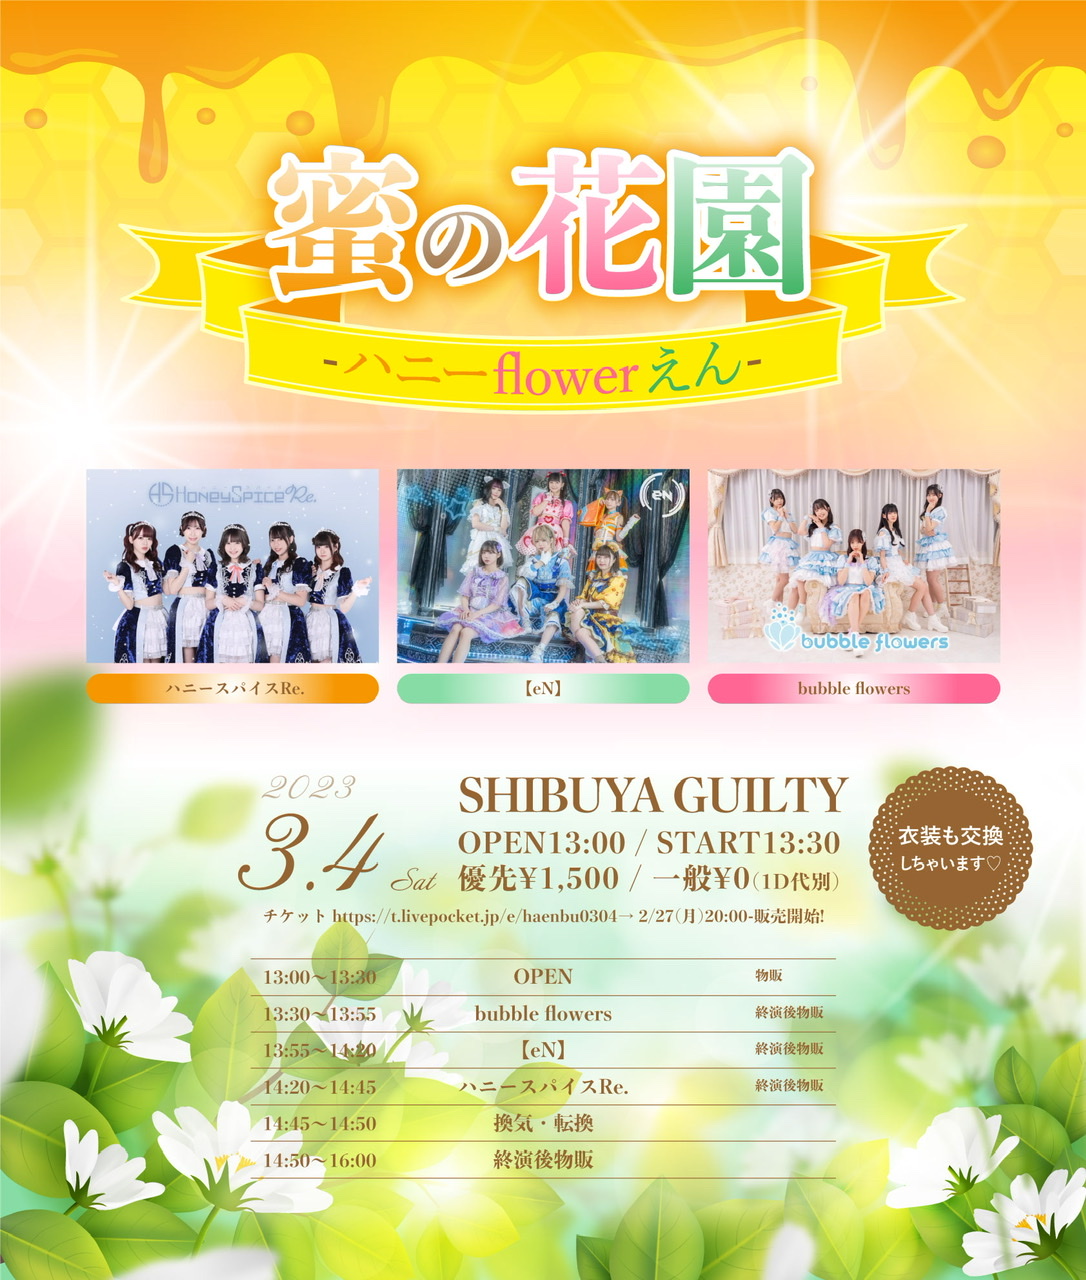 2023/3/4(土)『蜜の花園-ハニーflowerえん-』 渋谷Guilty